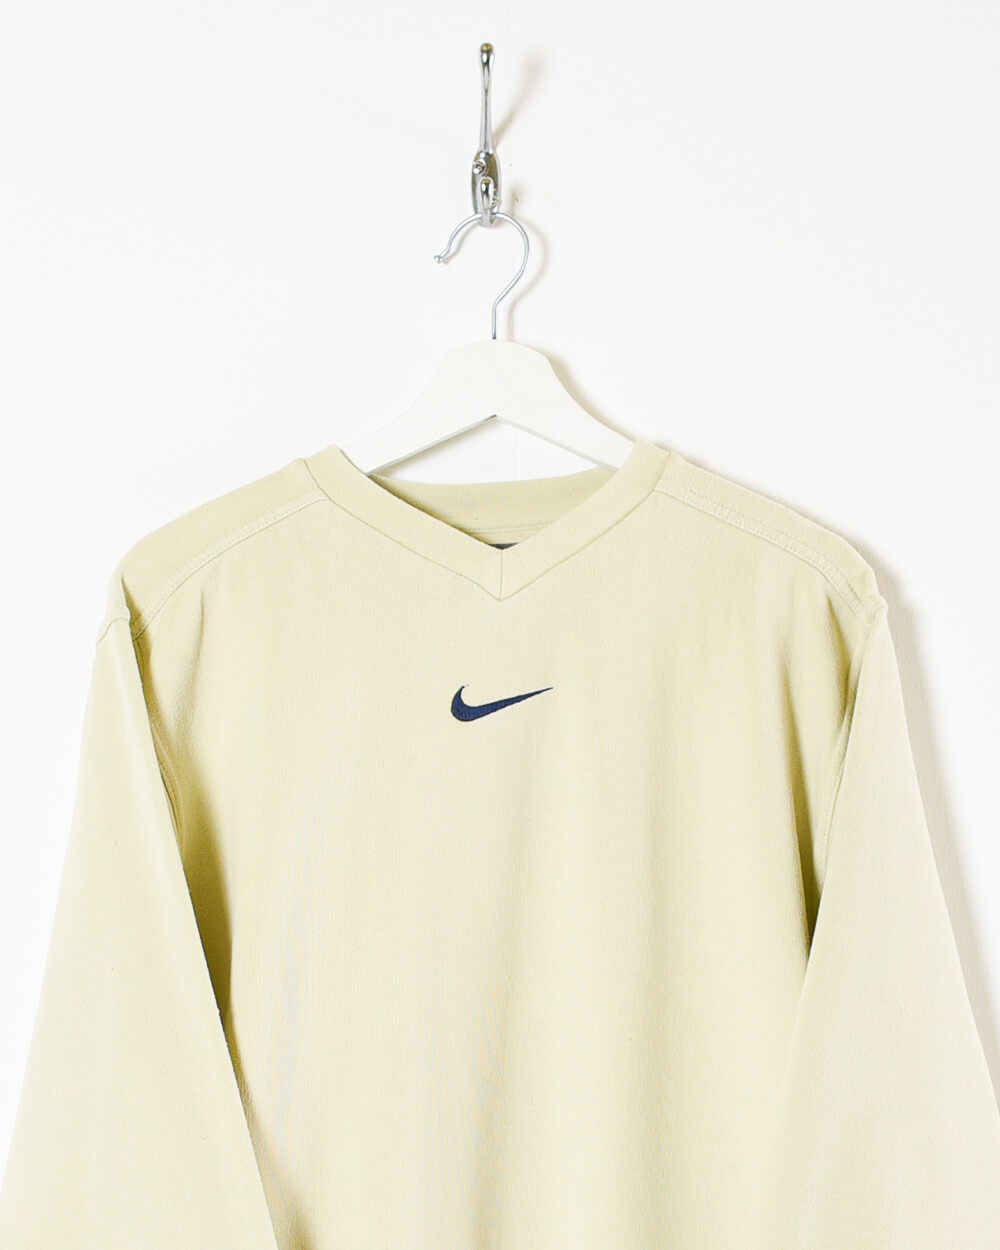 Neutral Nike Women's Sweatshirt - Large